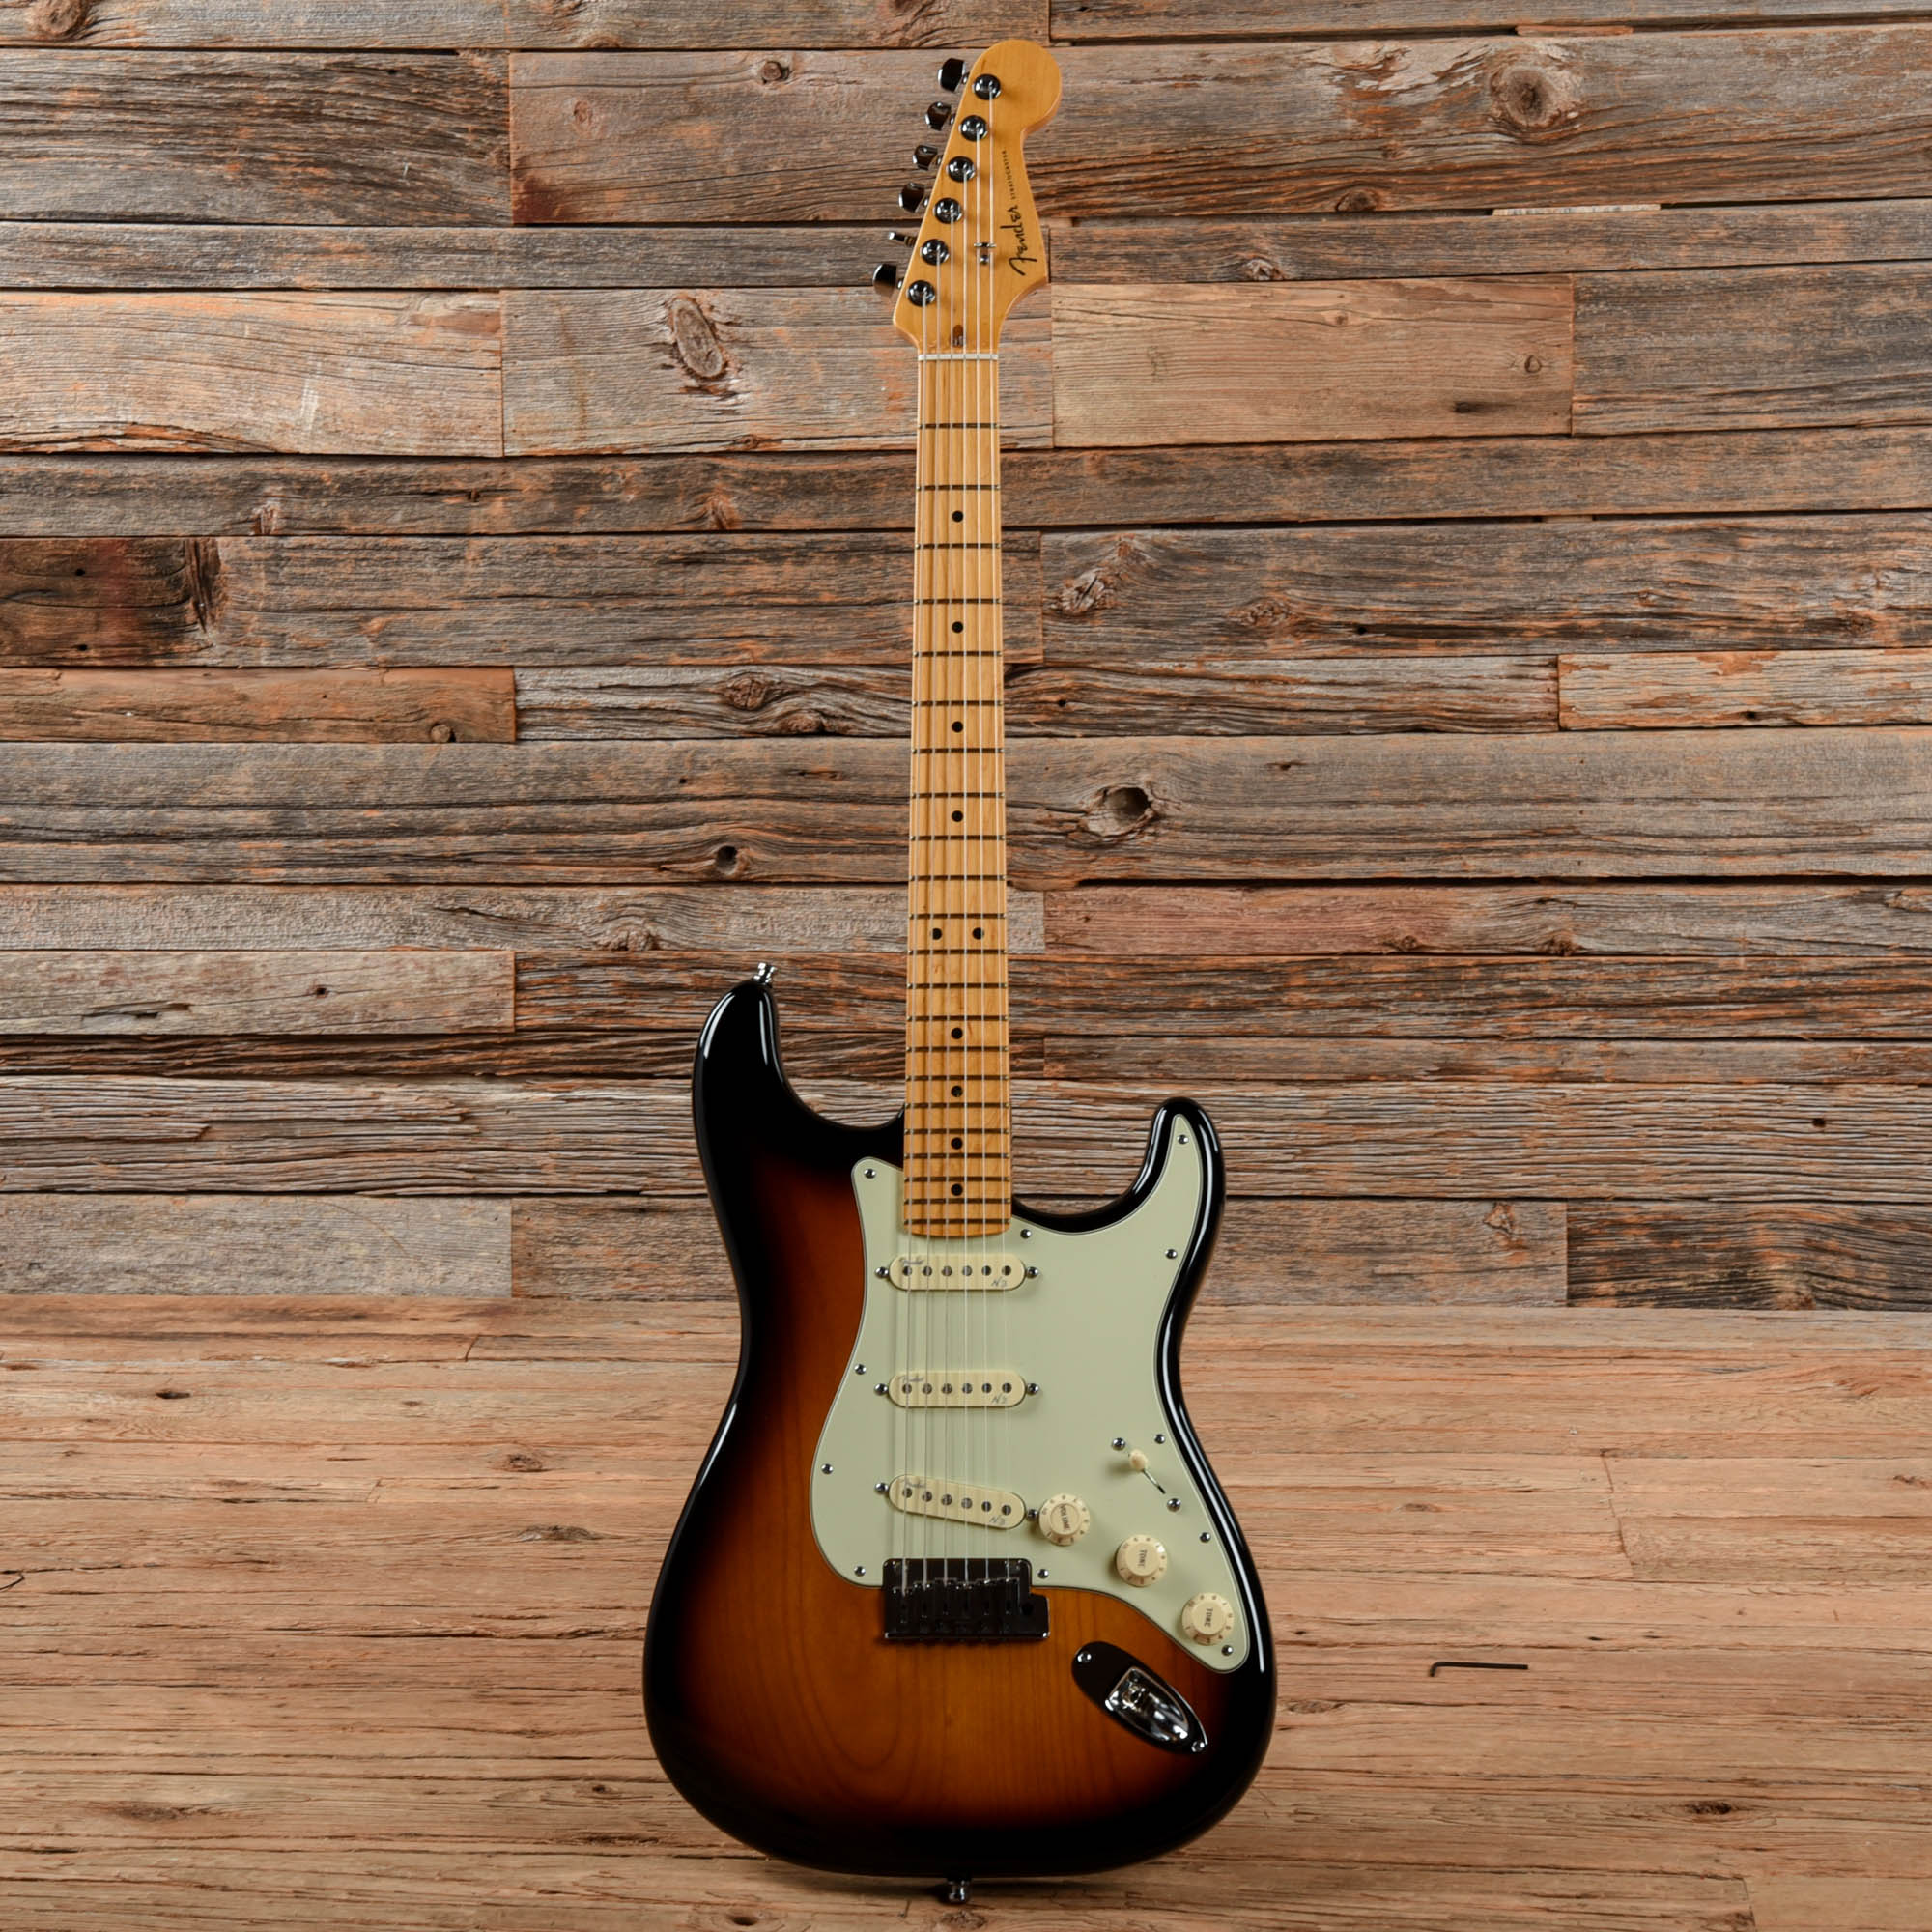 Fender American Deluxe Stratocaster Sunburst 2013